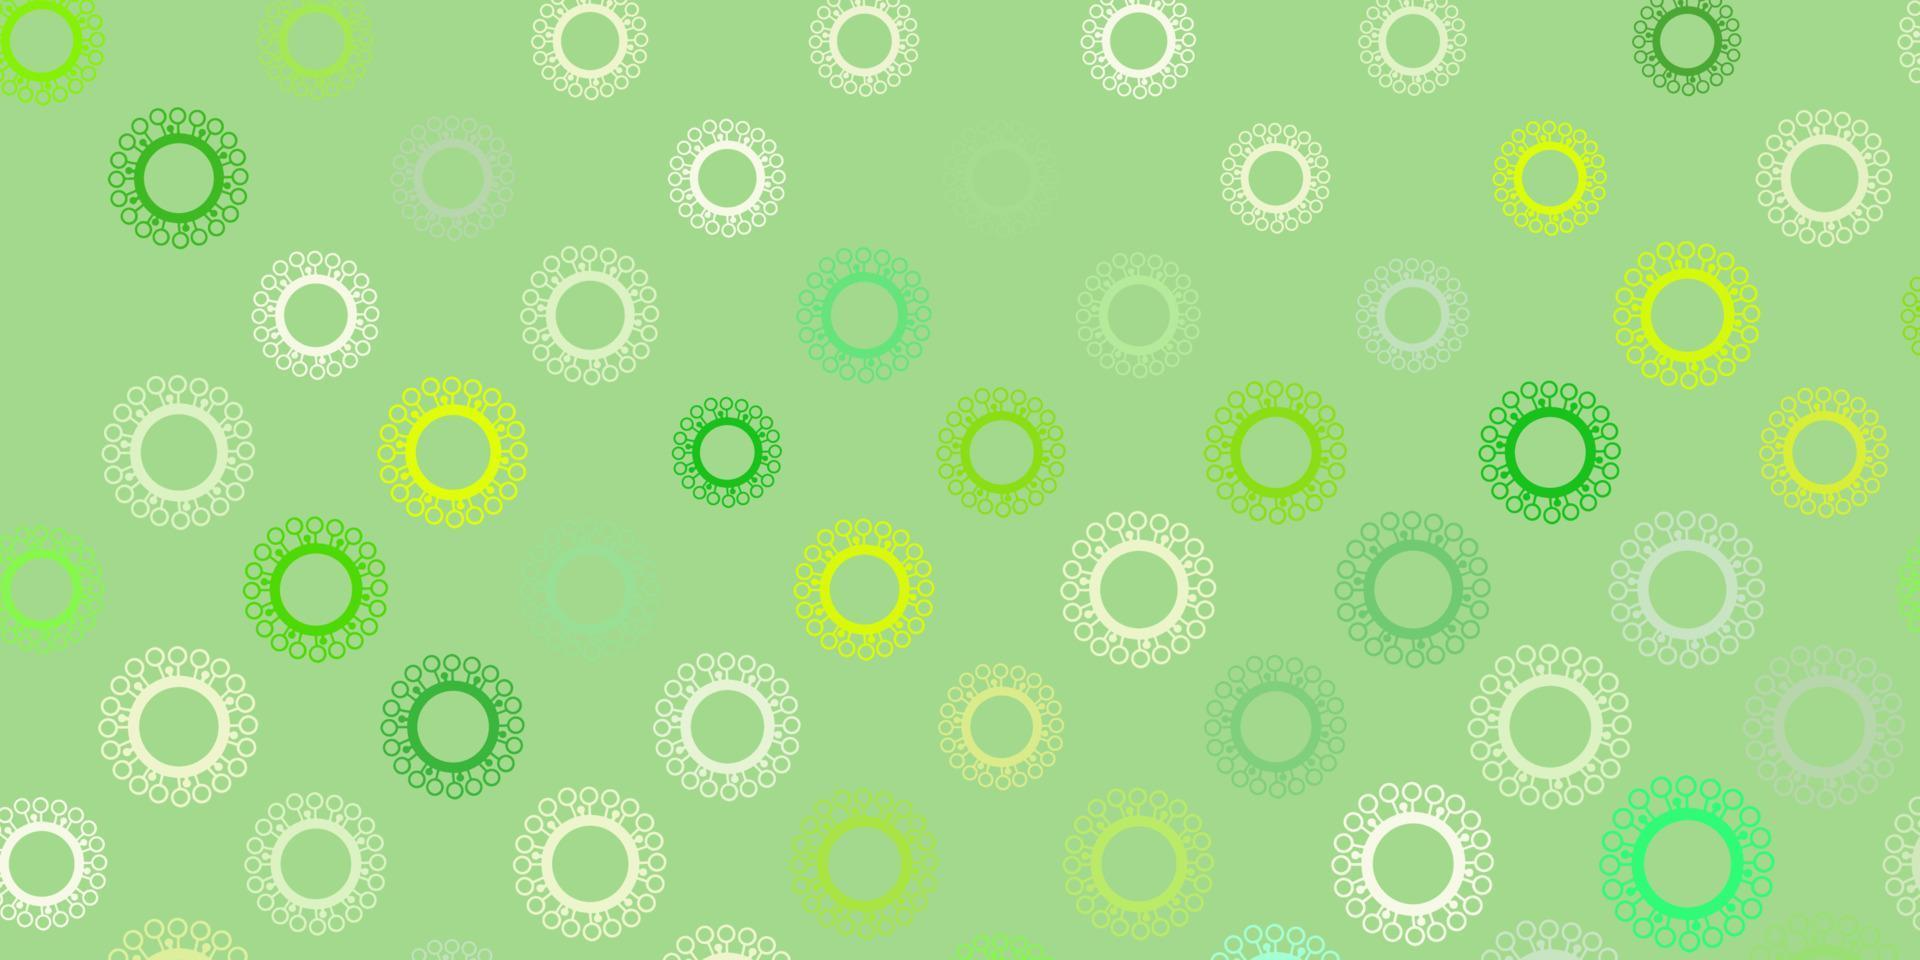 ljusgrön, gul vektorbakgrund med covid-19 symboler. vektor